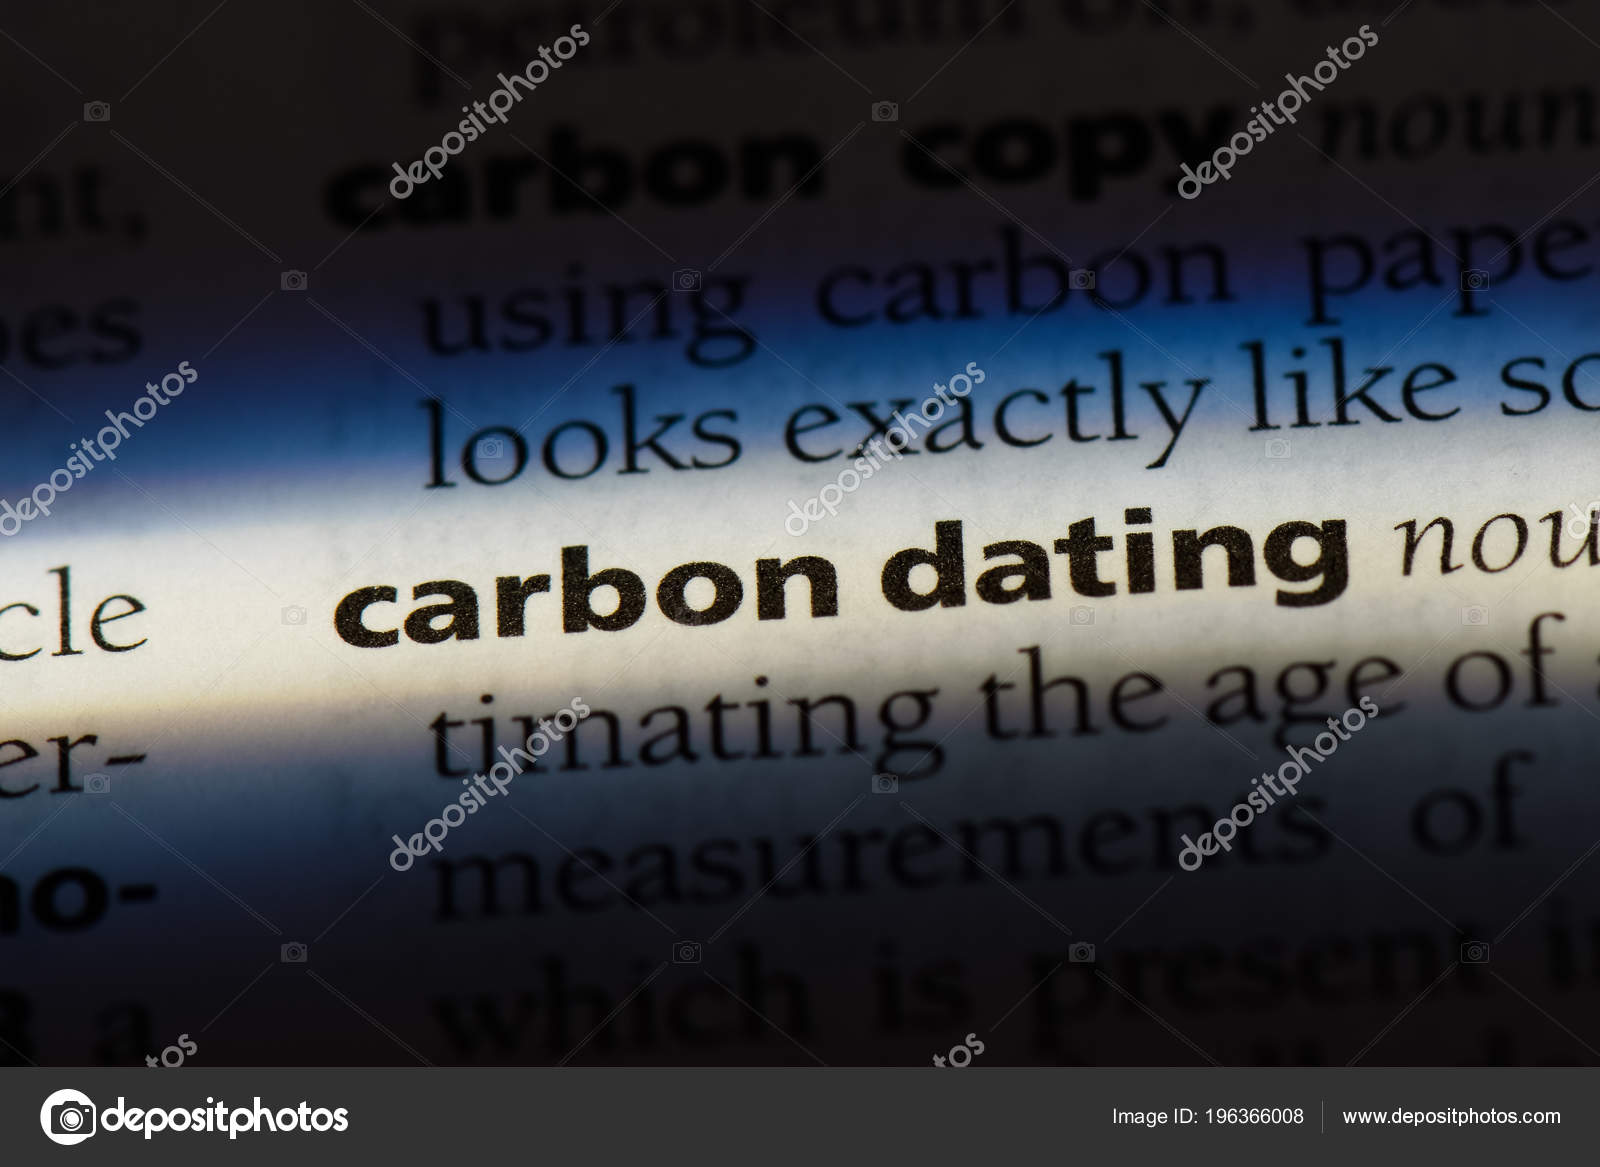 Billig karbon dating